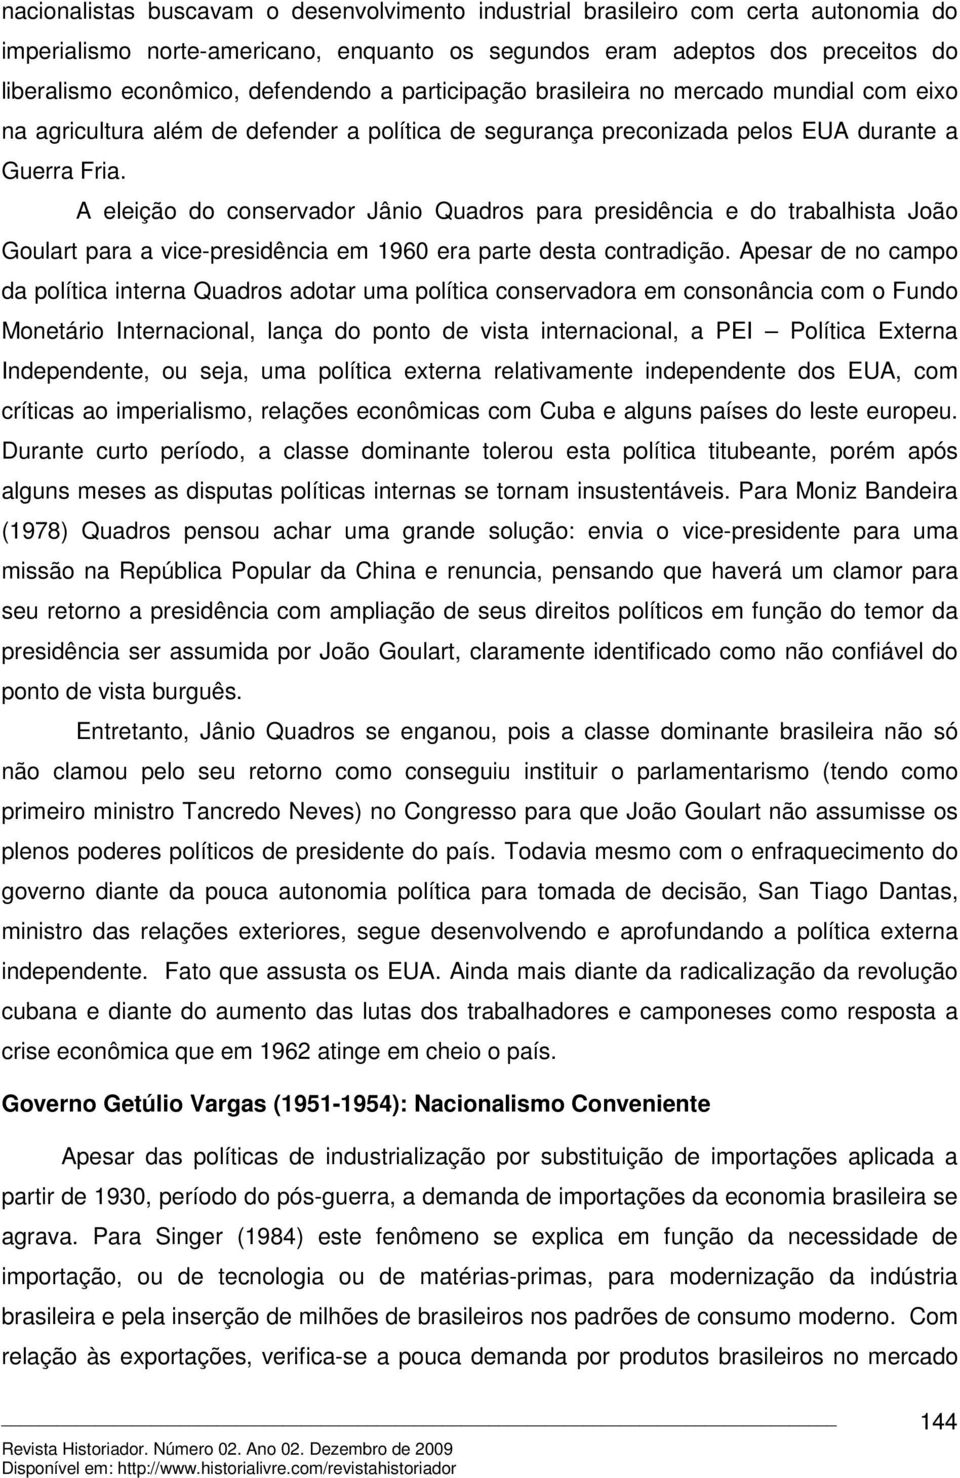 A eleição do conservador Jânio Quadros para presidência e do trabalhista João Goulart para a vice-presidência em 1960 era parte desta contradição.